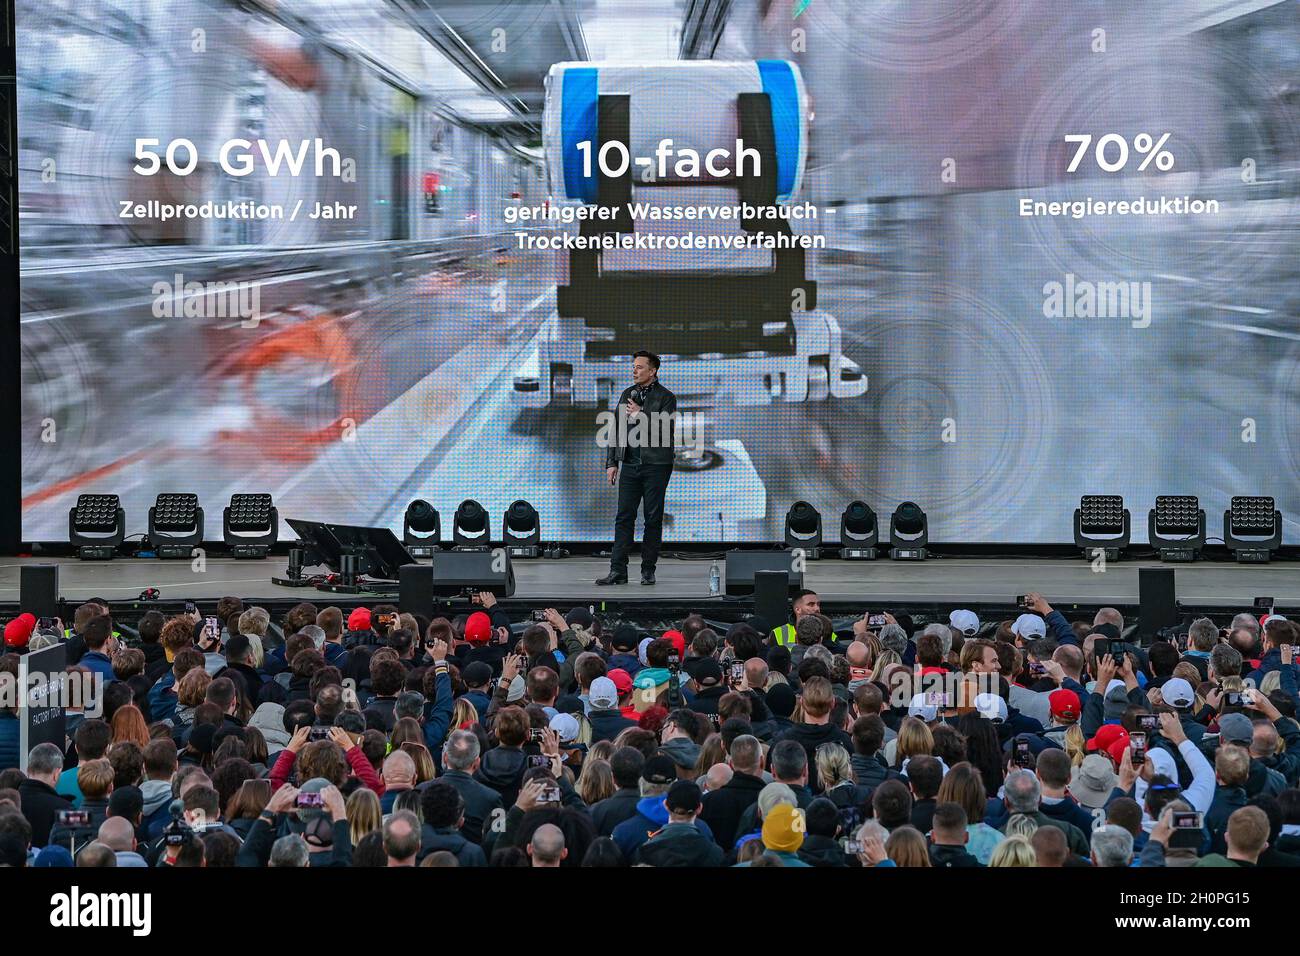 09 octobre 2021, Brandebourg, Grünheide: Elon Musk, PDG de Tesla, est sur une scène au Gigalactory de Tesla pour la journée portes ouvertes.À Grünheide, à l'est de Berlin, les premiers véhicules seront en sortie de la chaîne de production à partir de la fin de 2021.La société américaine prévoit de construire environ 500,000 modèles Ys ici chaque année.Photo: Patrick Pleul/dpa-Zentralbild/ZB Banque D'Images